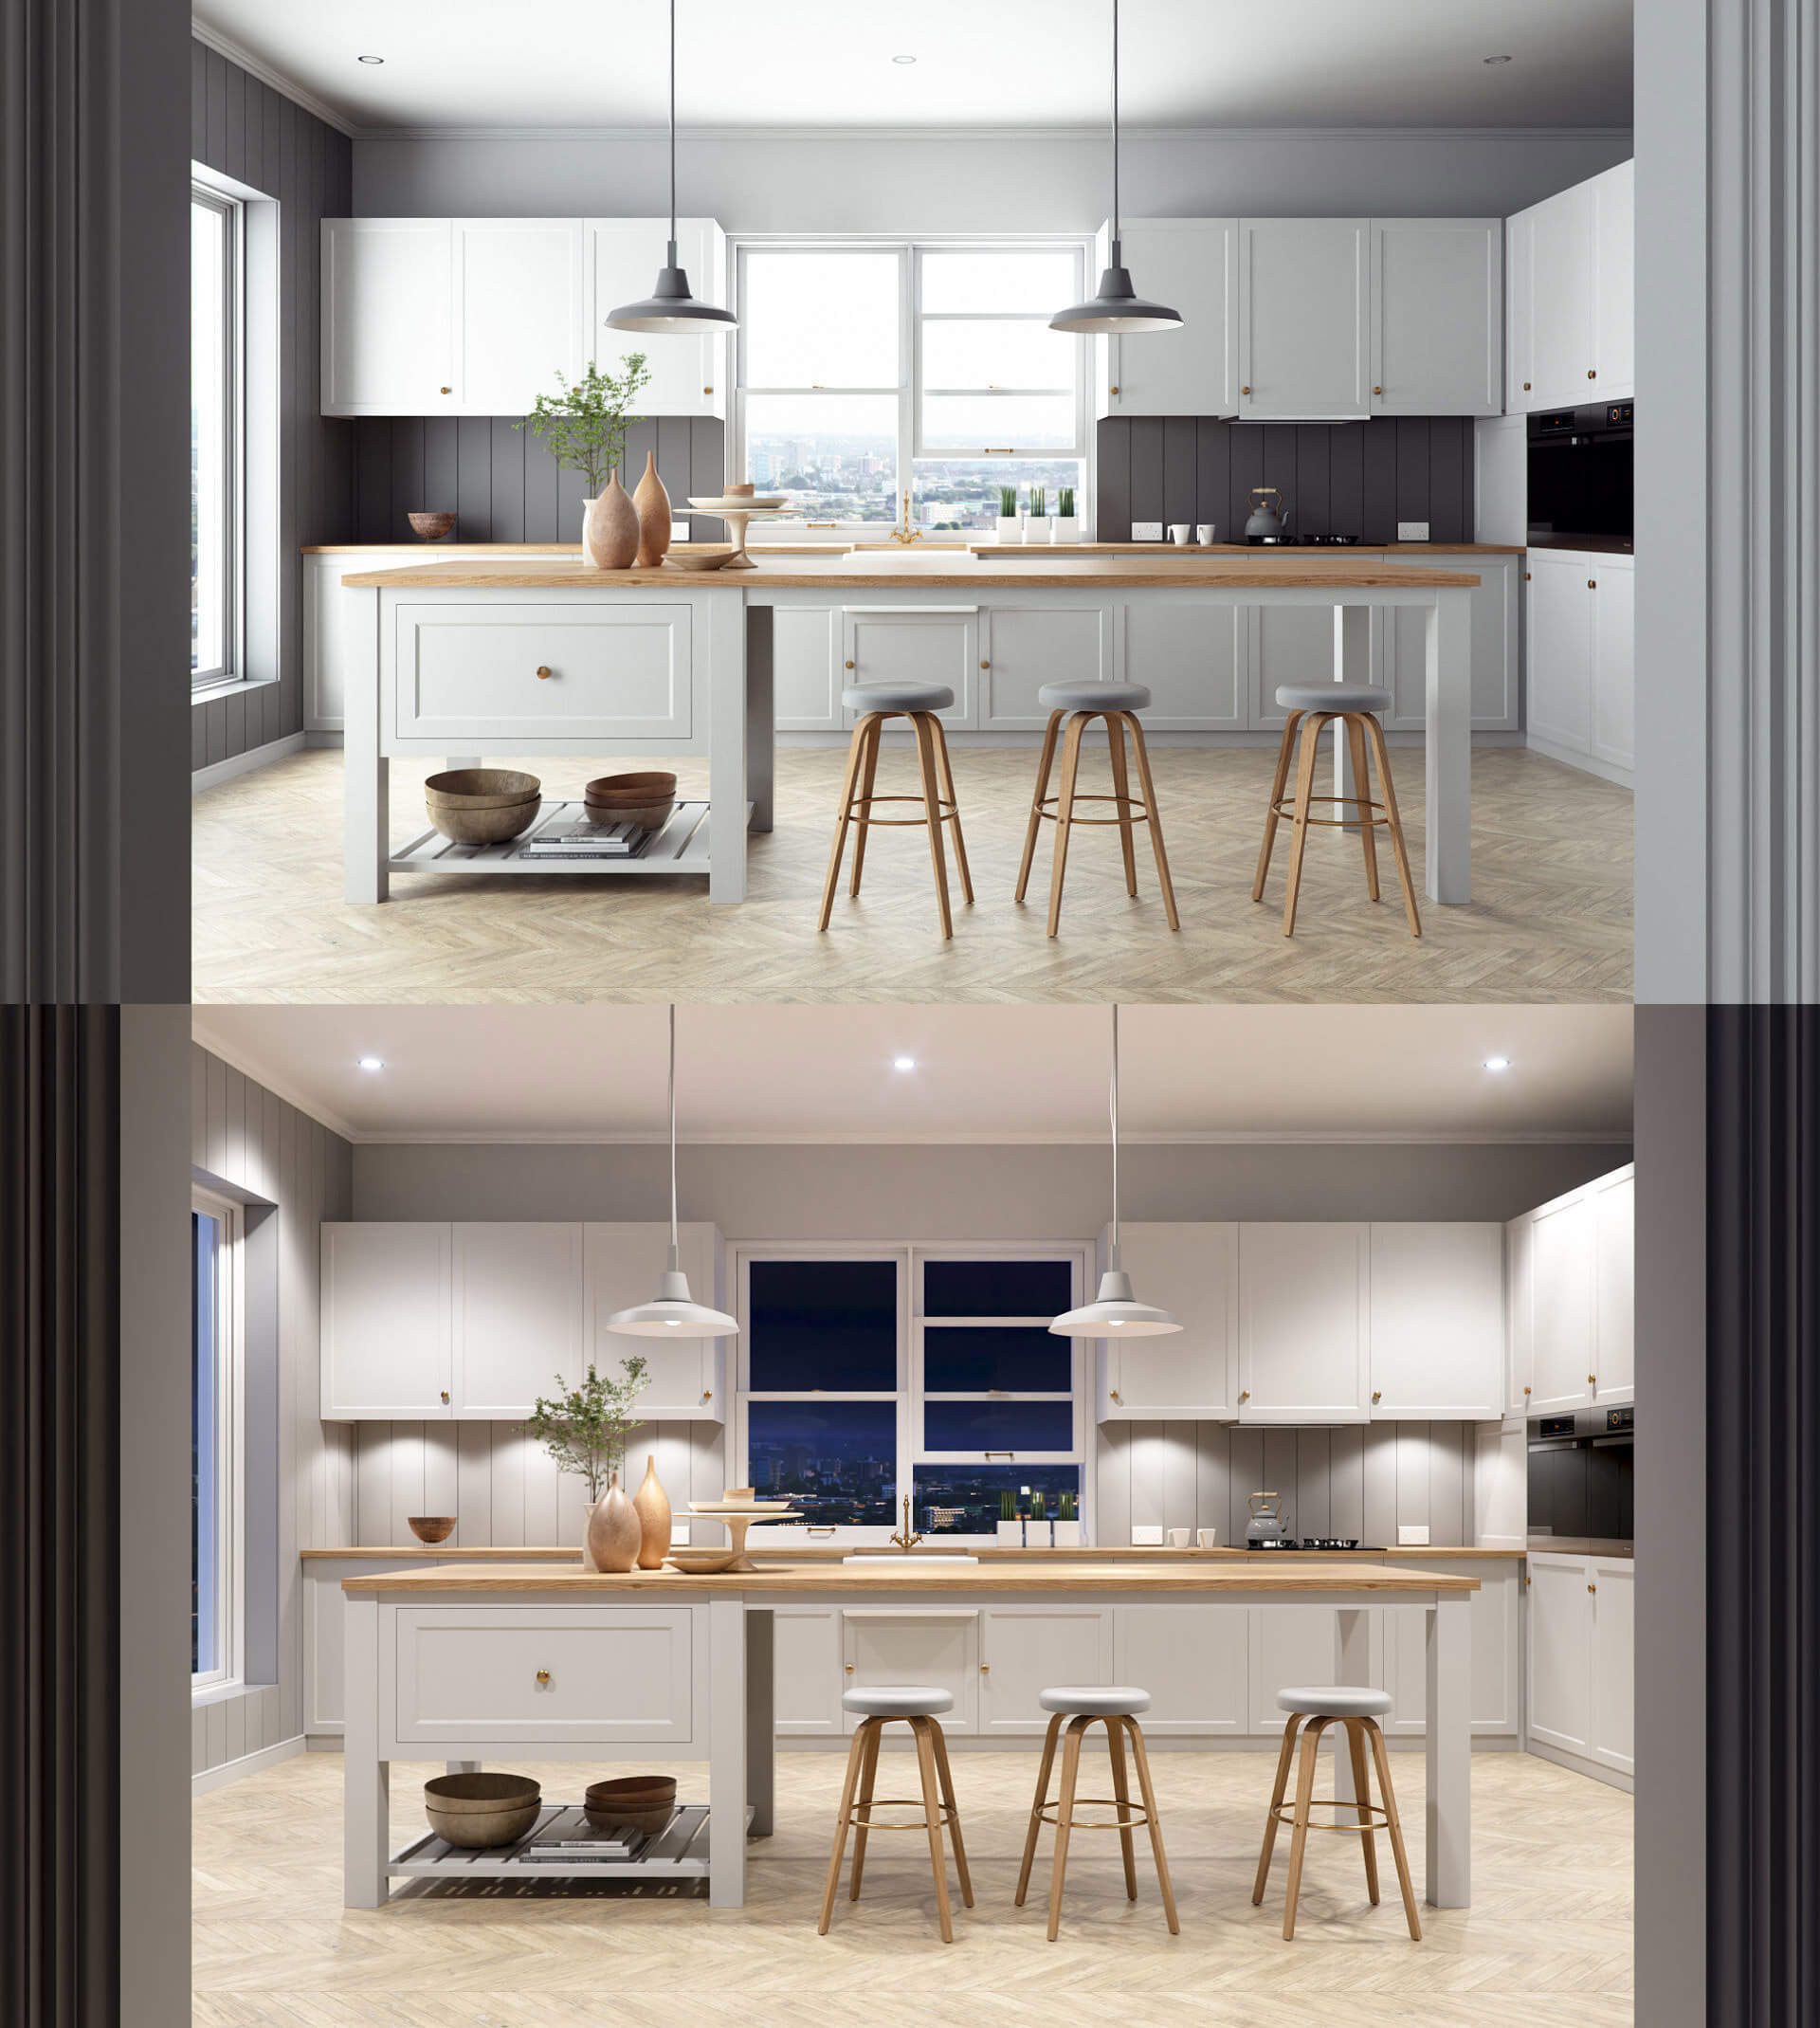 法国乡村风格厨房设计厨房内部场景3D模型（OBJ,FBX,MAX）